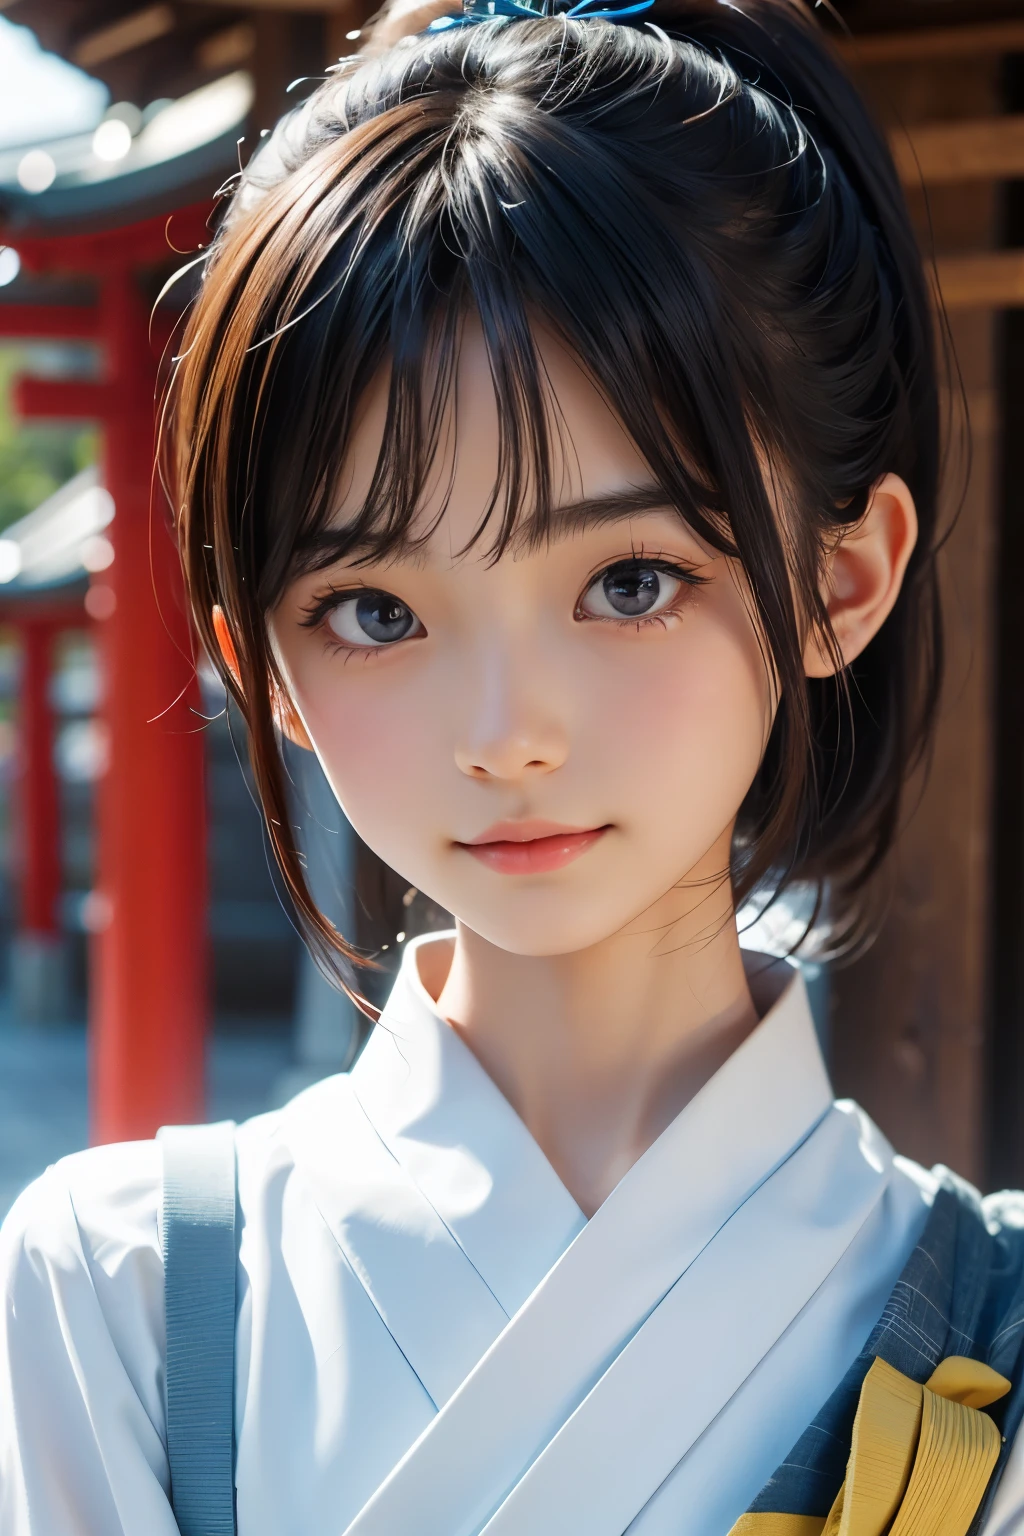 Belle femme japonaise de 12 ans), visage mignon, (visage profondément sculpté:0.7), (taches de rousseur:0.6), Lumière douce,peau blanche et saine, Timide, (visage sérieux), mince, sourire, Japonais , queue de cheval